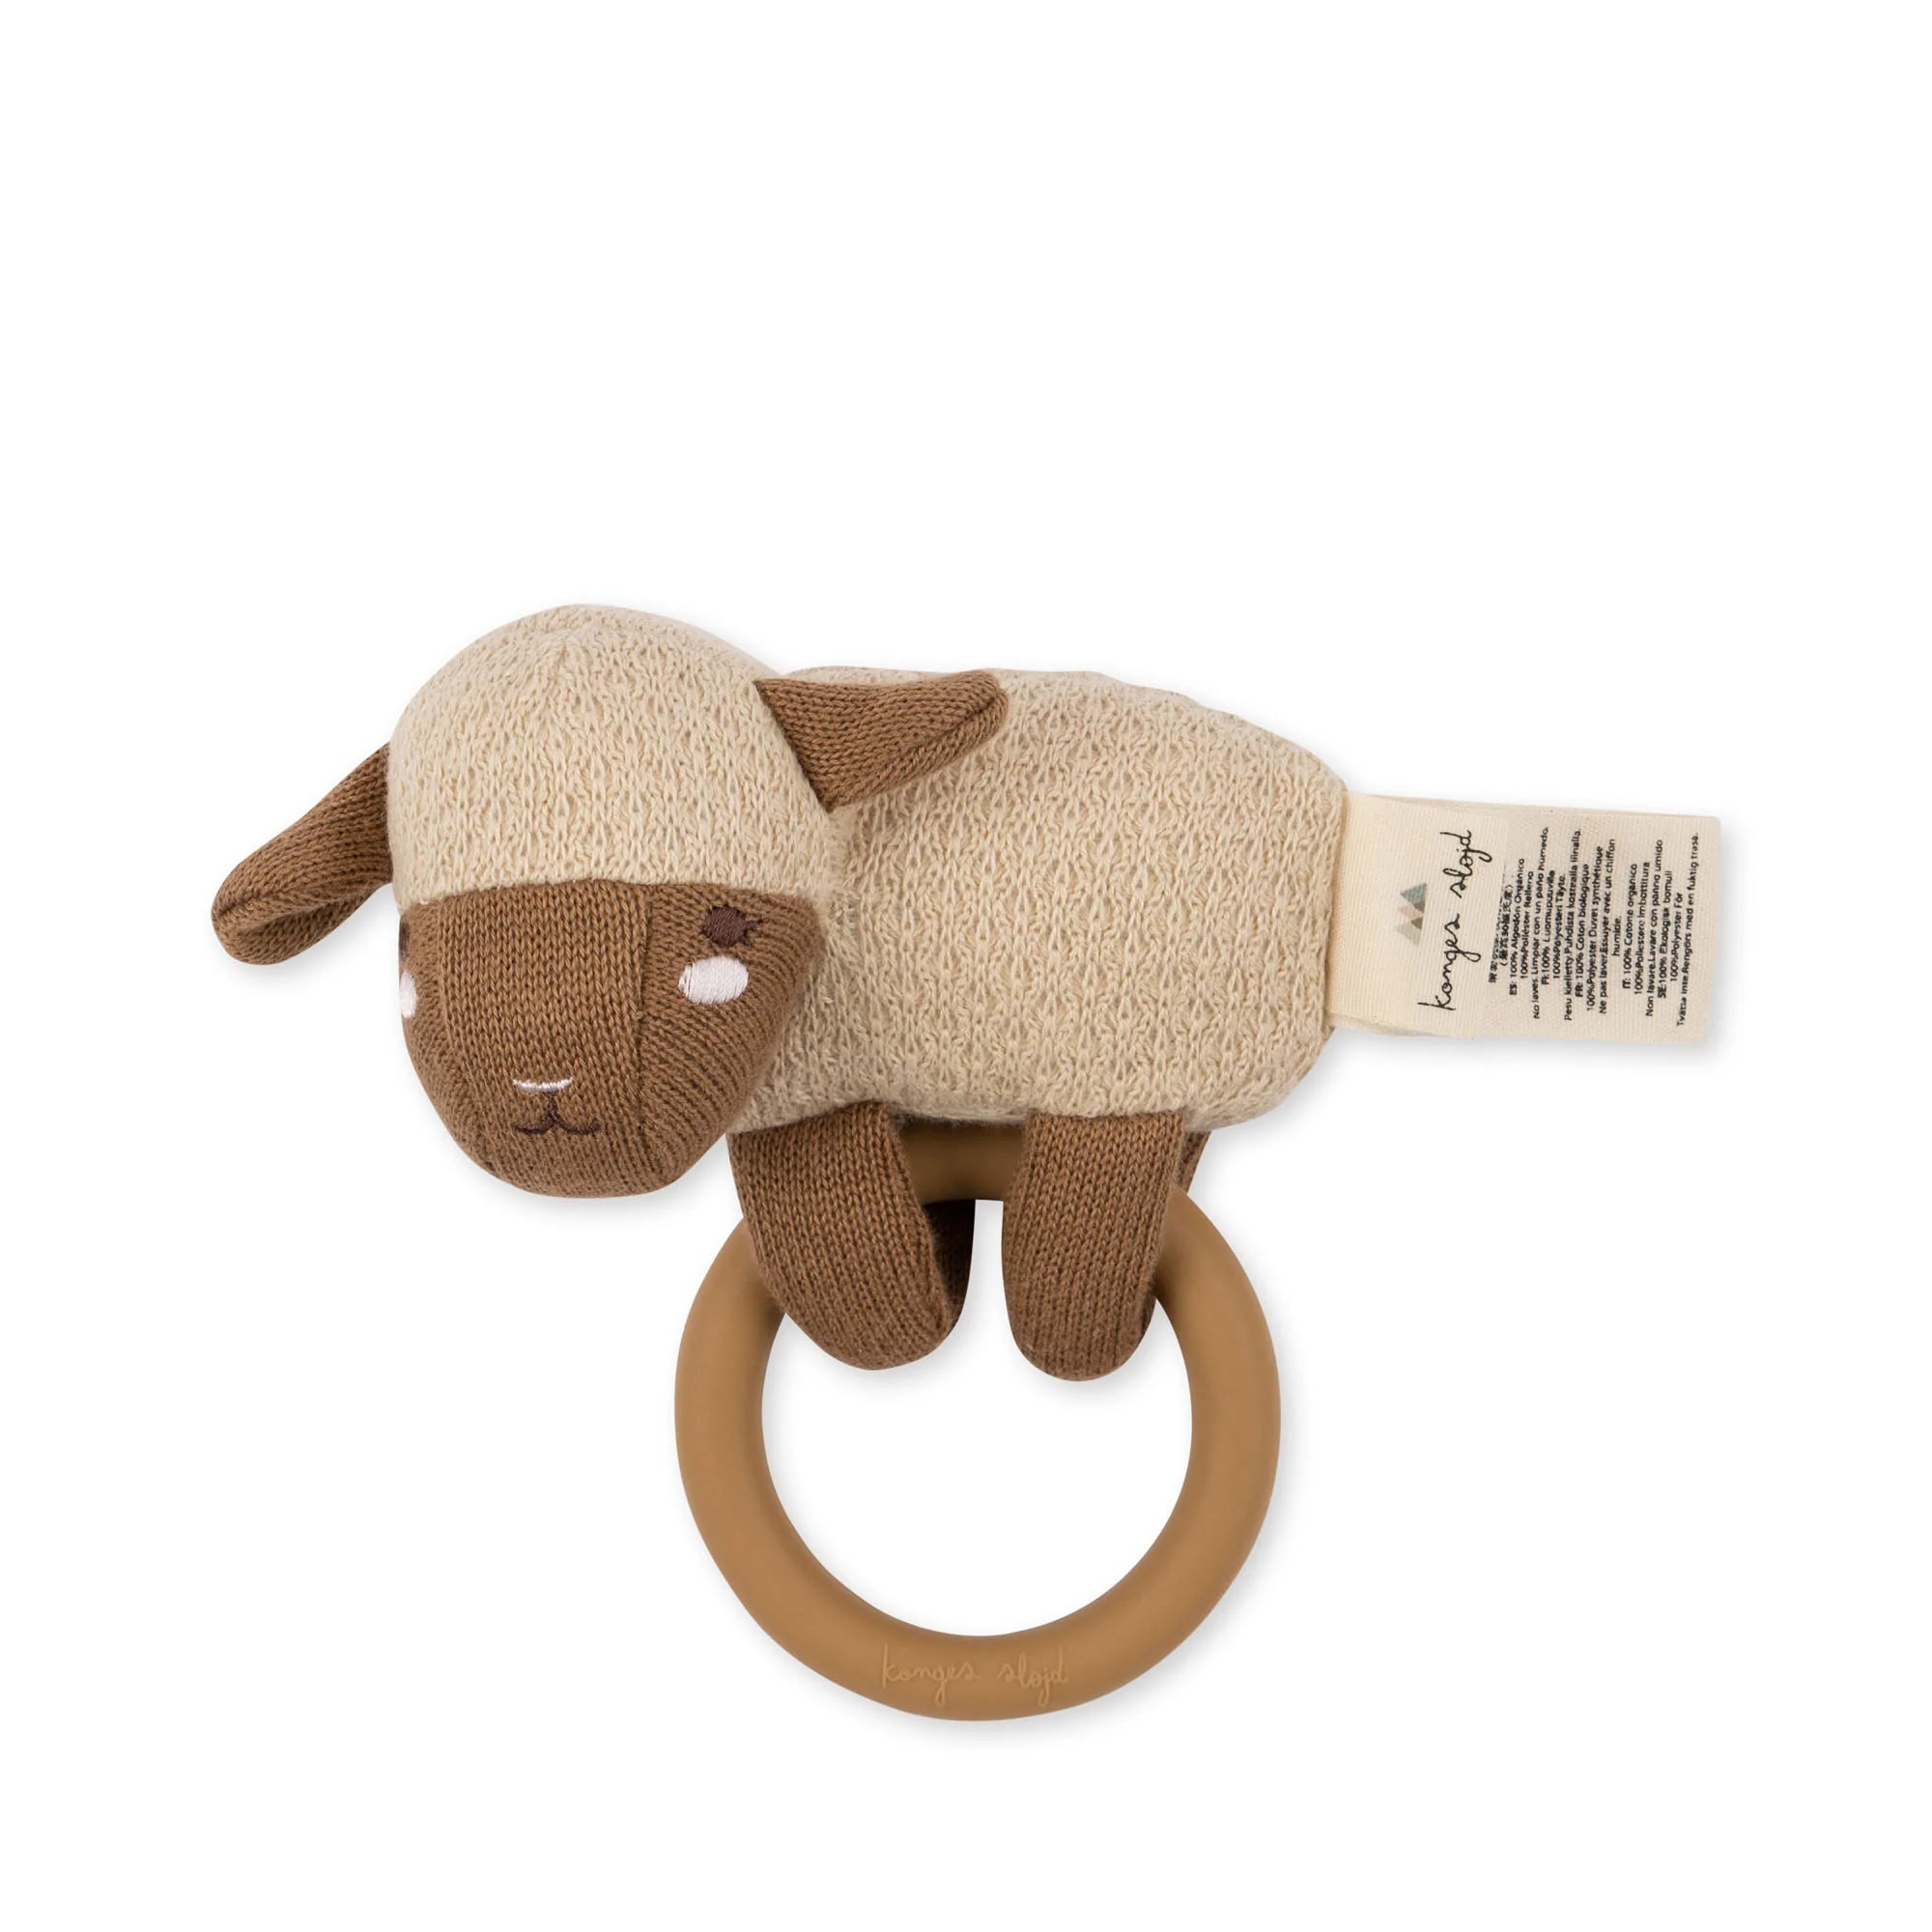 KONGES ACTIVITY KNIT RING / SHEEP